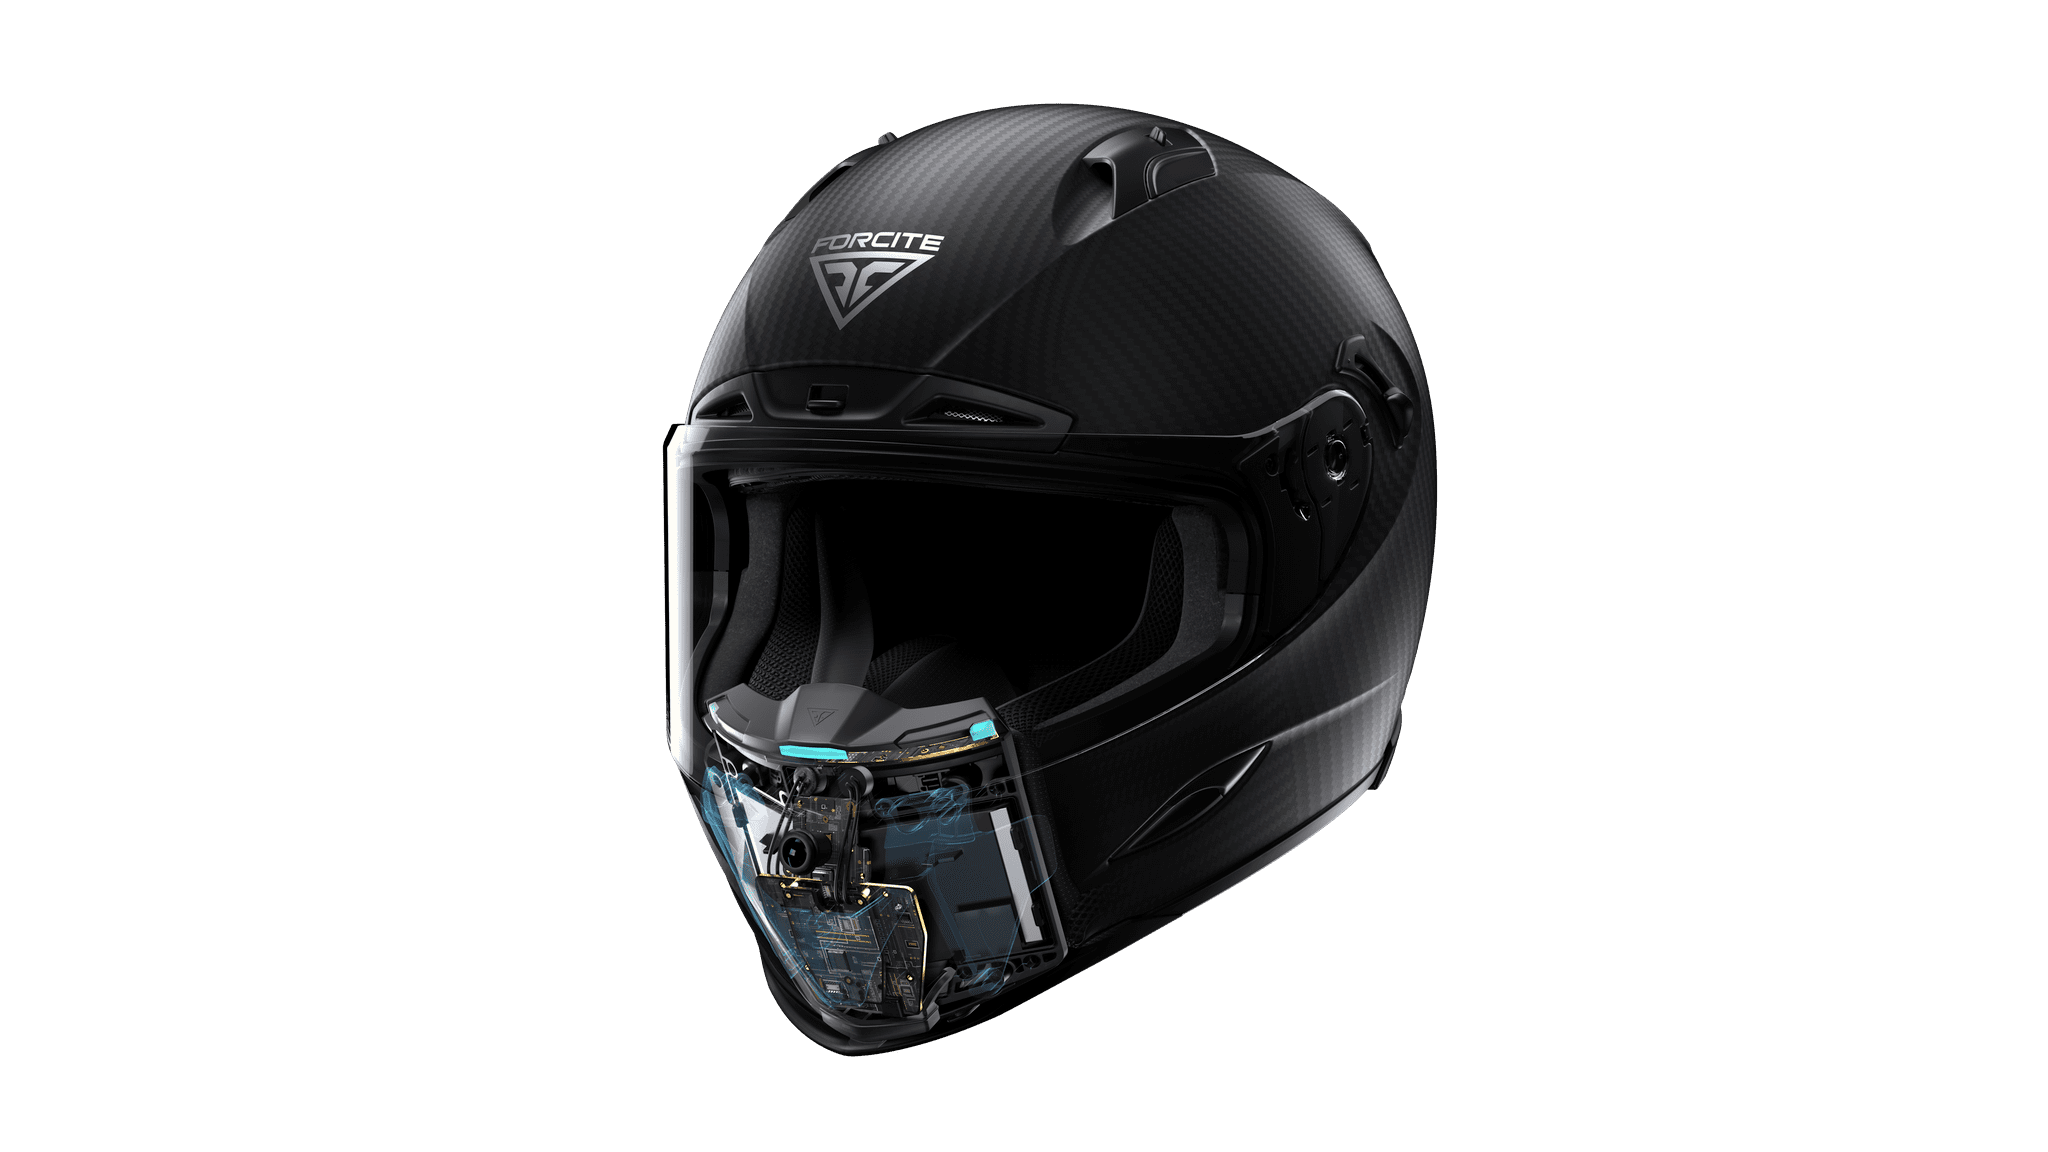 Forcite Mk1 smart helmet